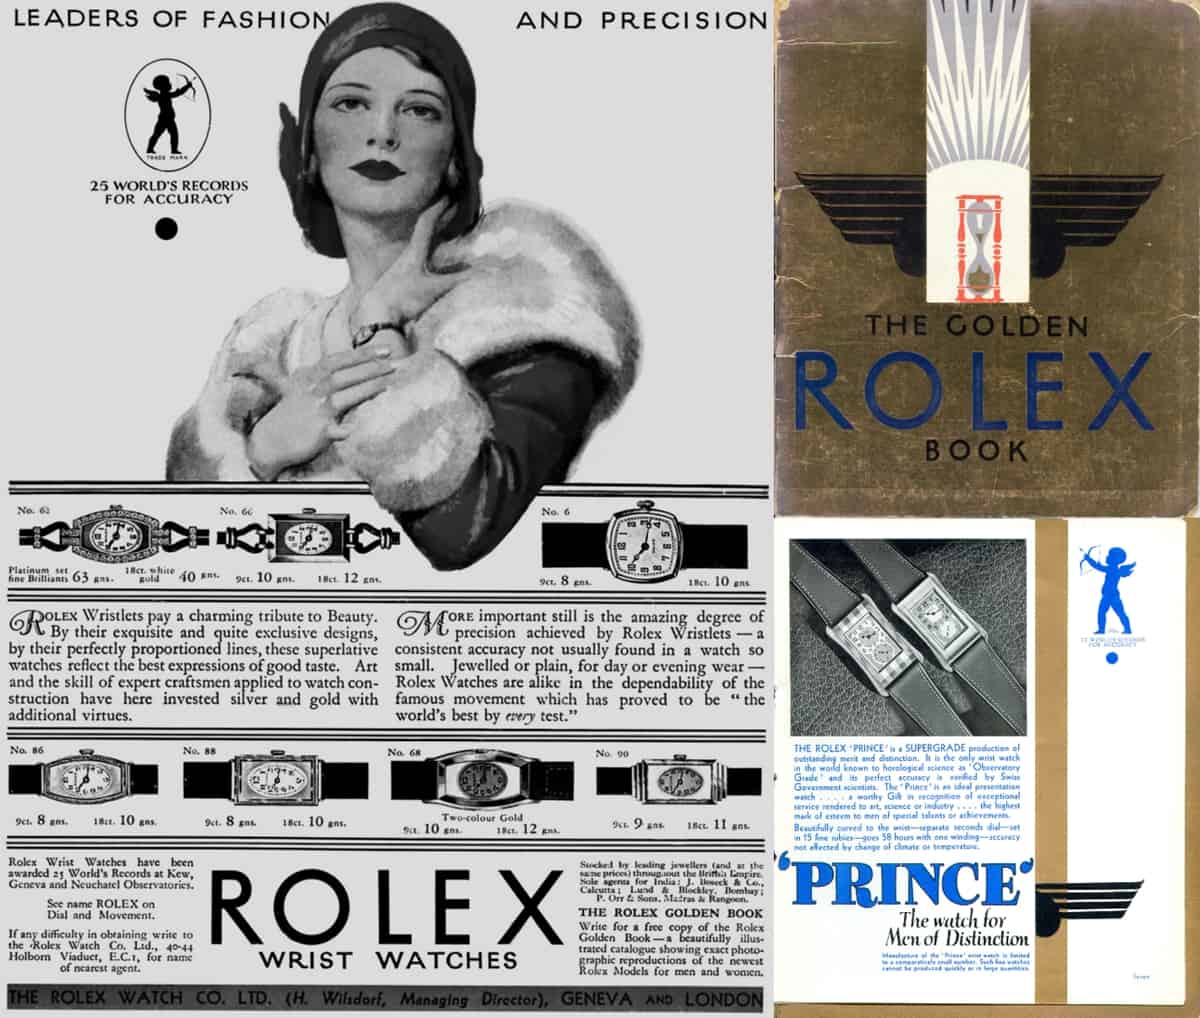 Rolex Anzeige ca 1934 - enthaltem im Rolex Golden Book